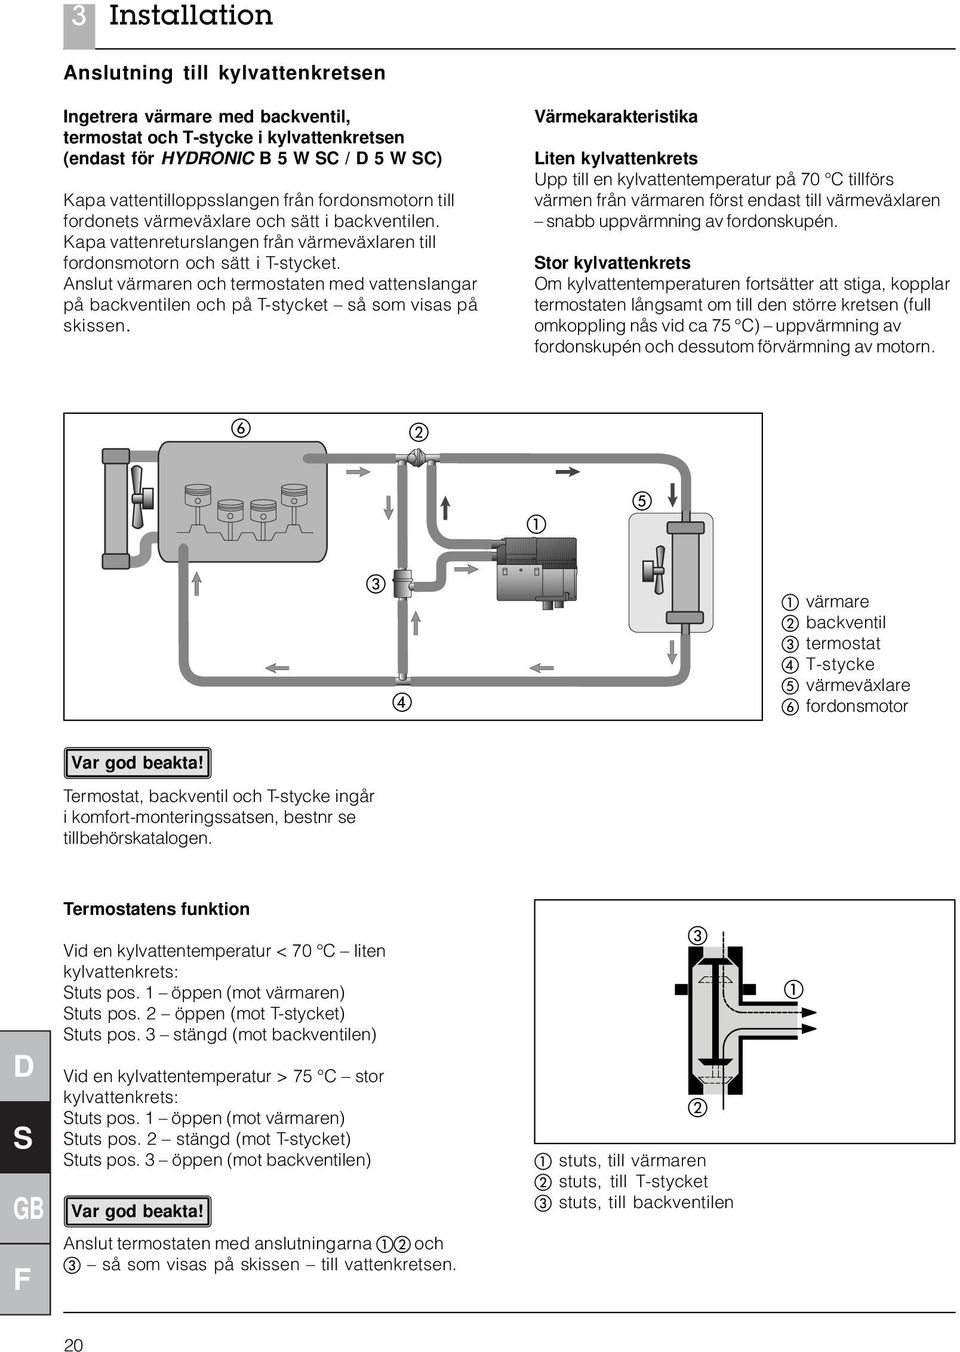 Anslut värmaren och termostaten med vattenslangar på backventilen och på T-stycket så som visas på skissen.